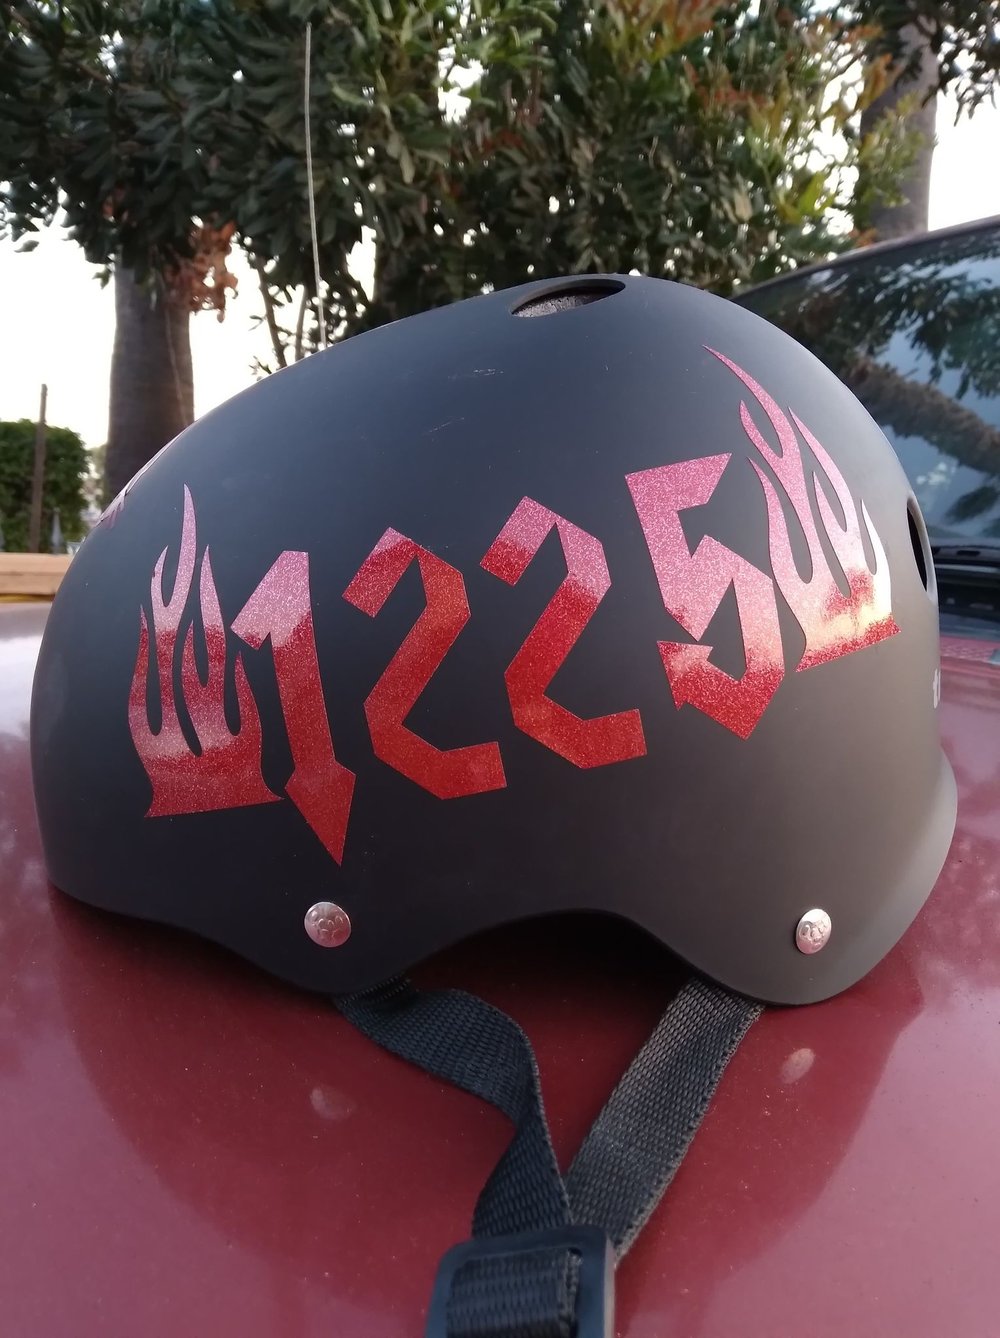 Helmet Names and Numbers